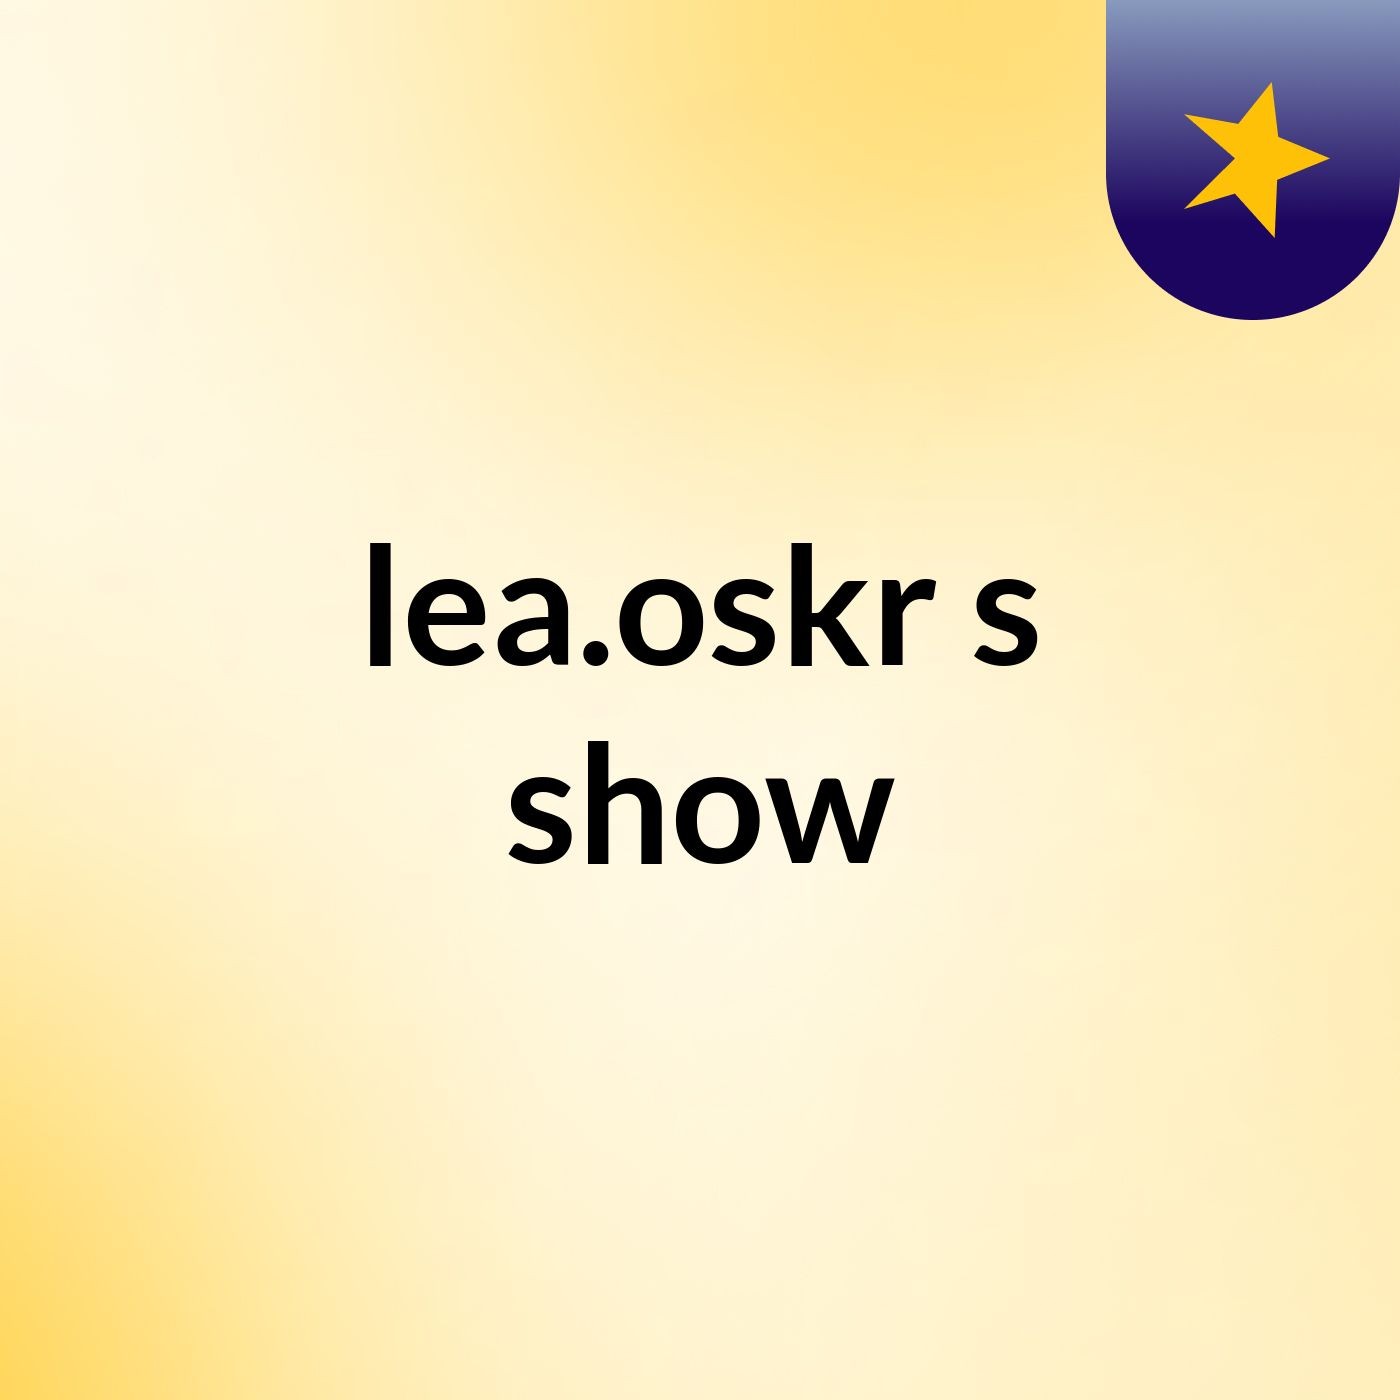 lea.oskr's show